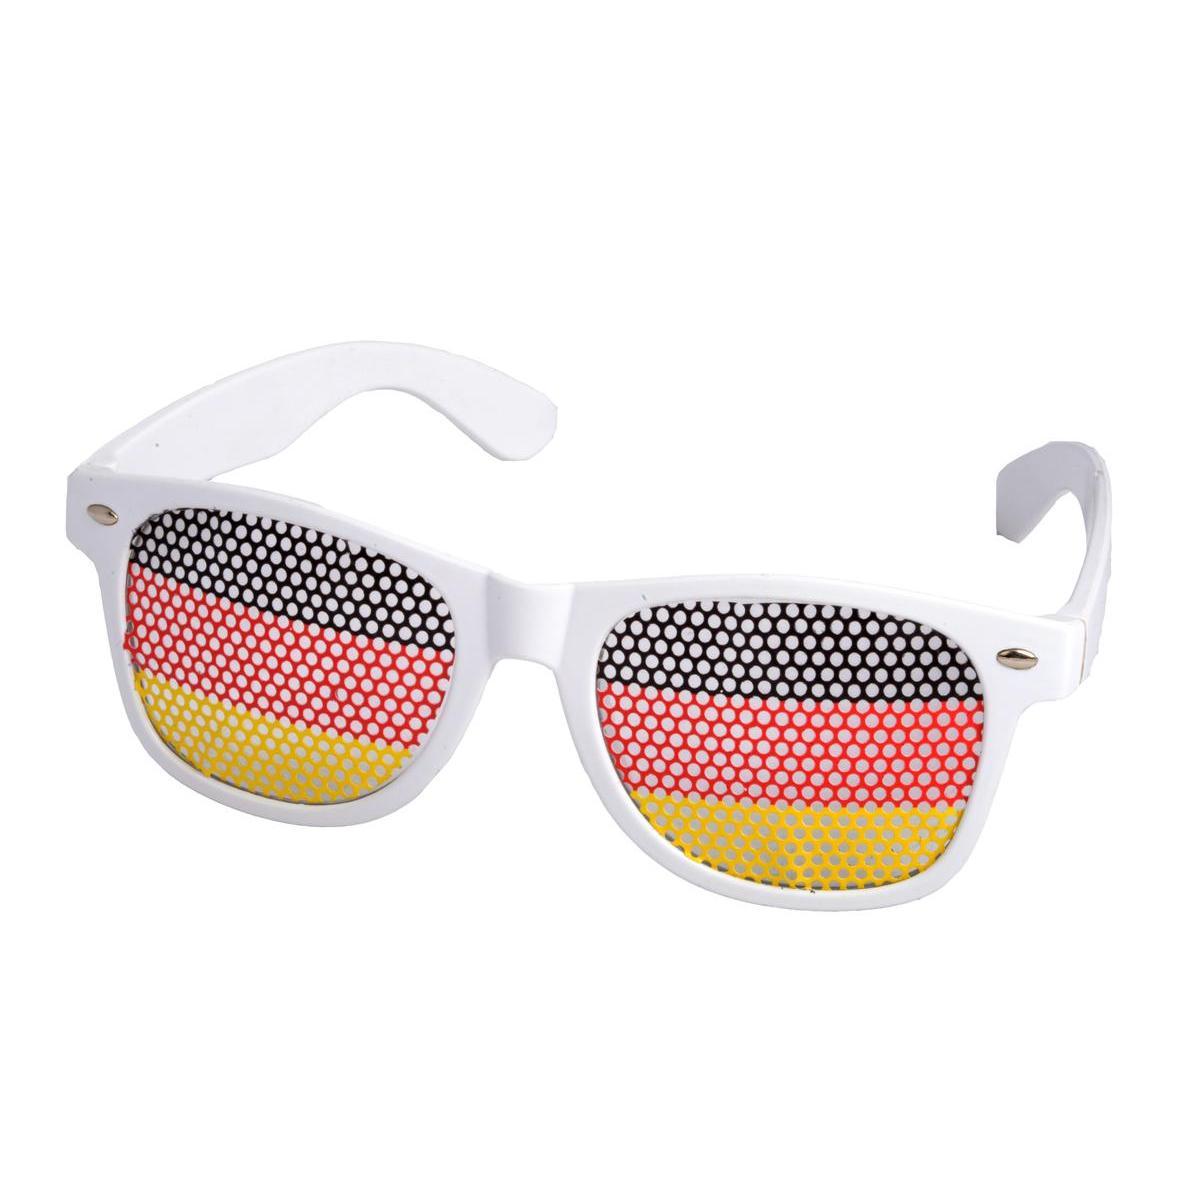 Lunettes supporter de l'Allemagne - 15 x 14.4 x 6.6 cm - Noir, rouge, jaune, blanc